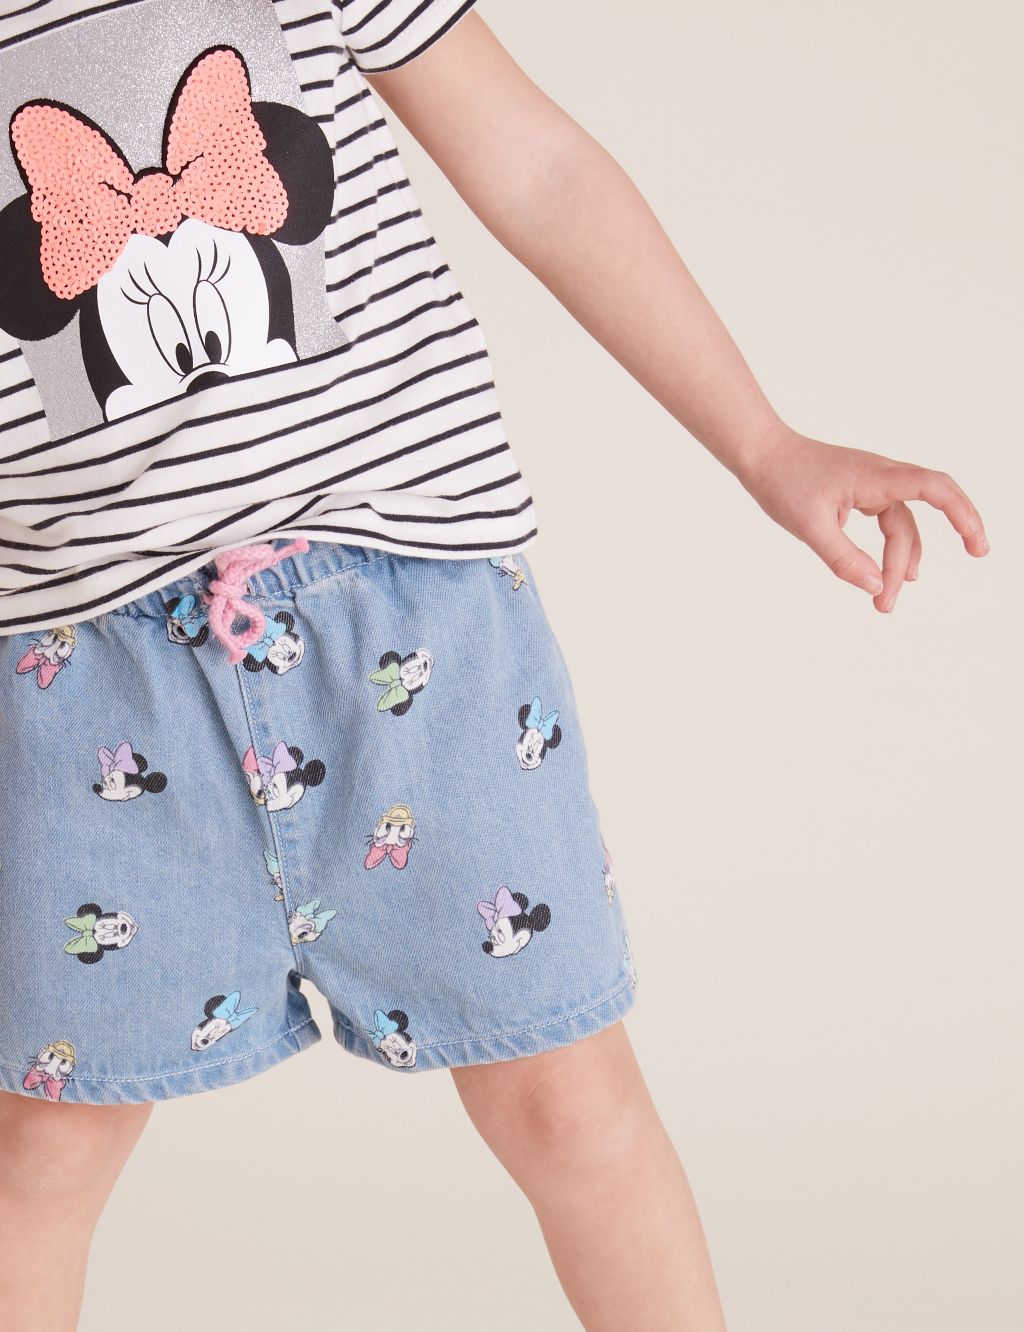 Disney Girls' Toddler Minnie Seven Pack Brief Underwear, Multi, 2T